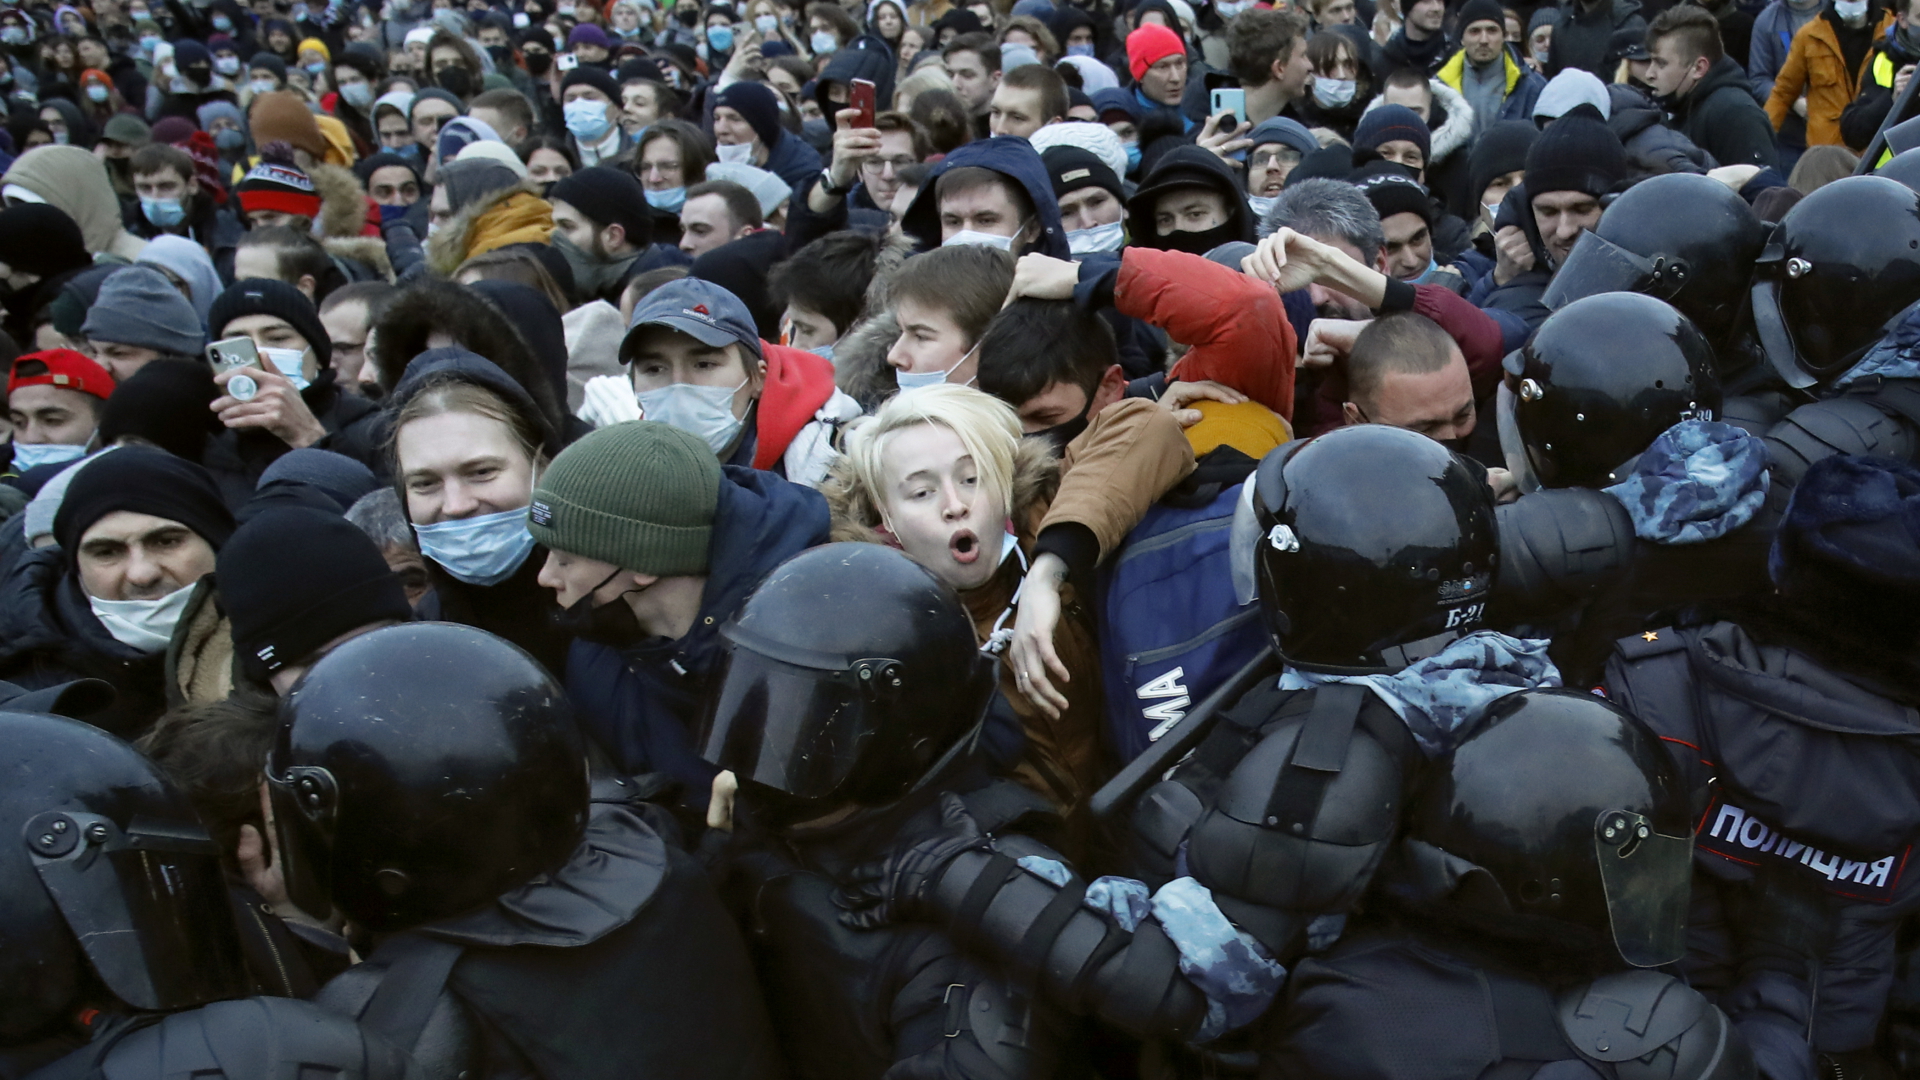 Polizisten sind in St. Petersburg mit Demonstranten zusammengestoßen, die gegen die Inhaftierung des Oppositionsführers Nawalny protestierten. | dpa